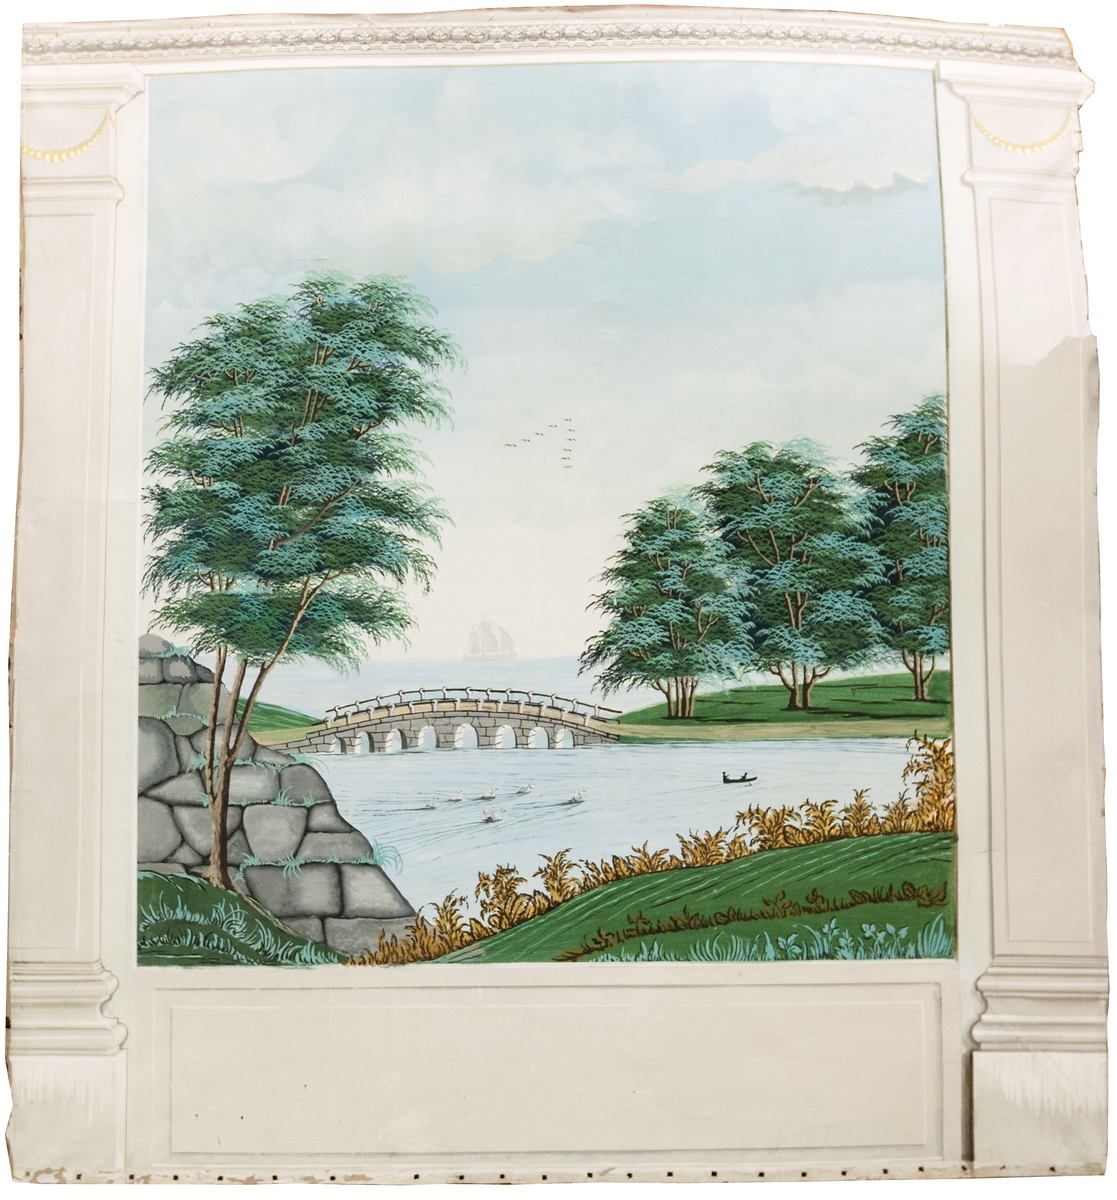 Väggmålning med pilastrar och väggfält med landskapsvy, sjö med stenbro, en eka och en plog med fåglar på himlen.
Limfärg på papp.